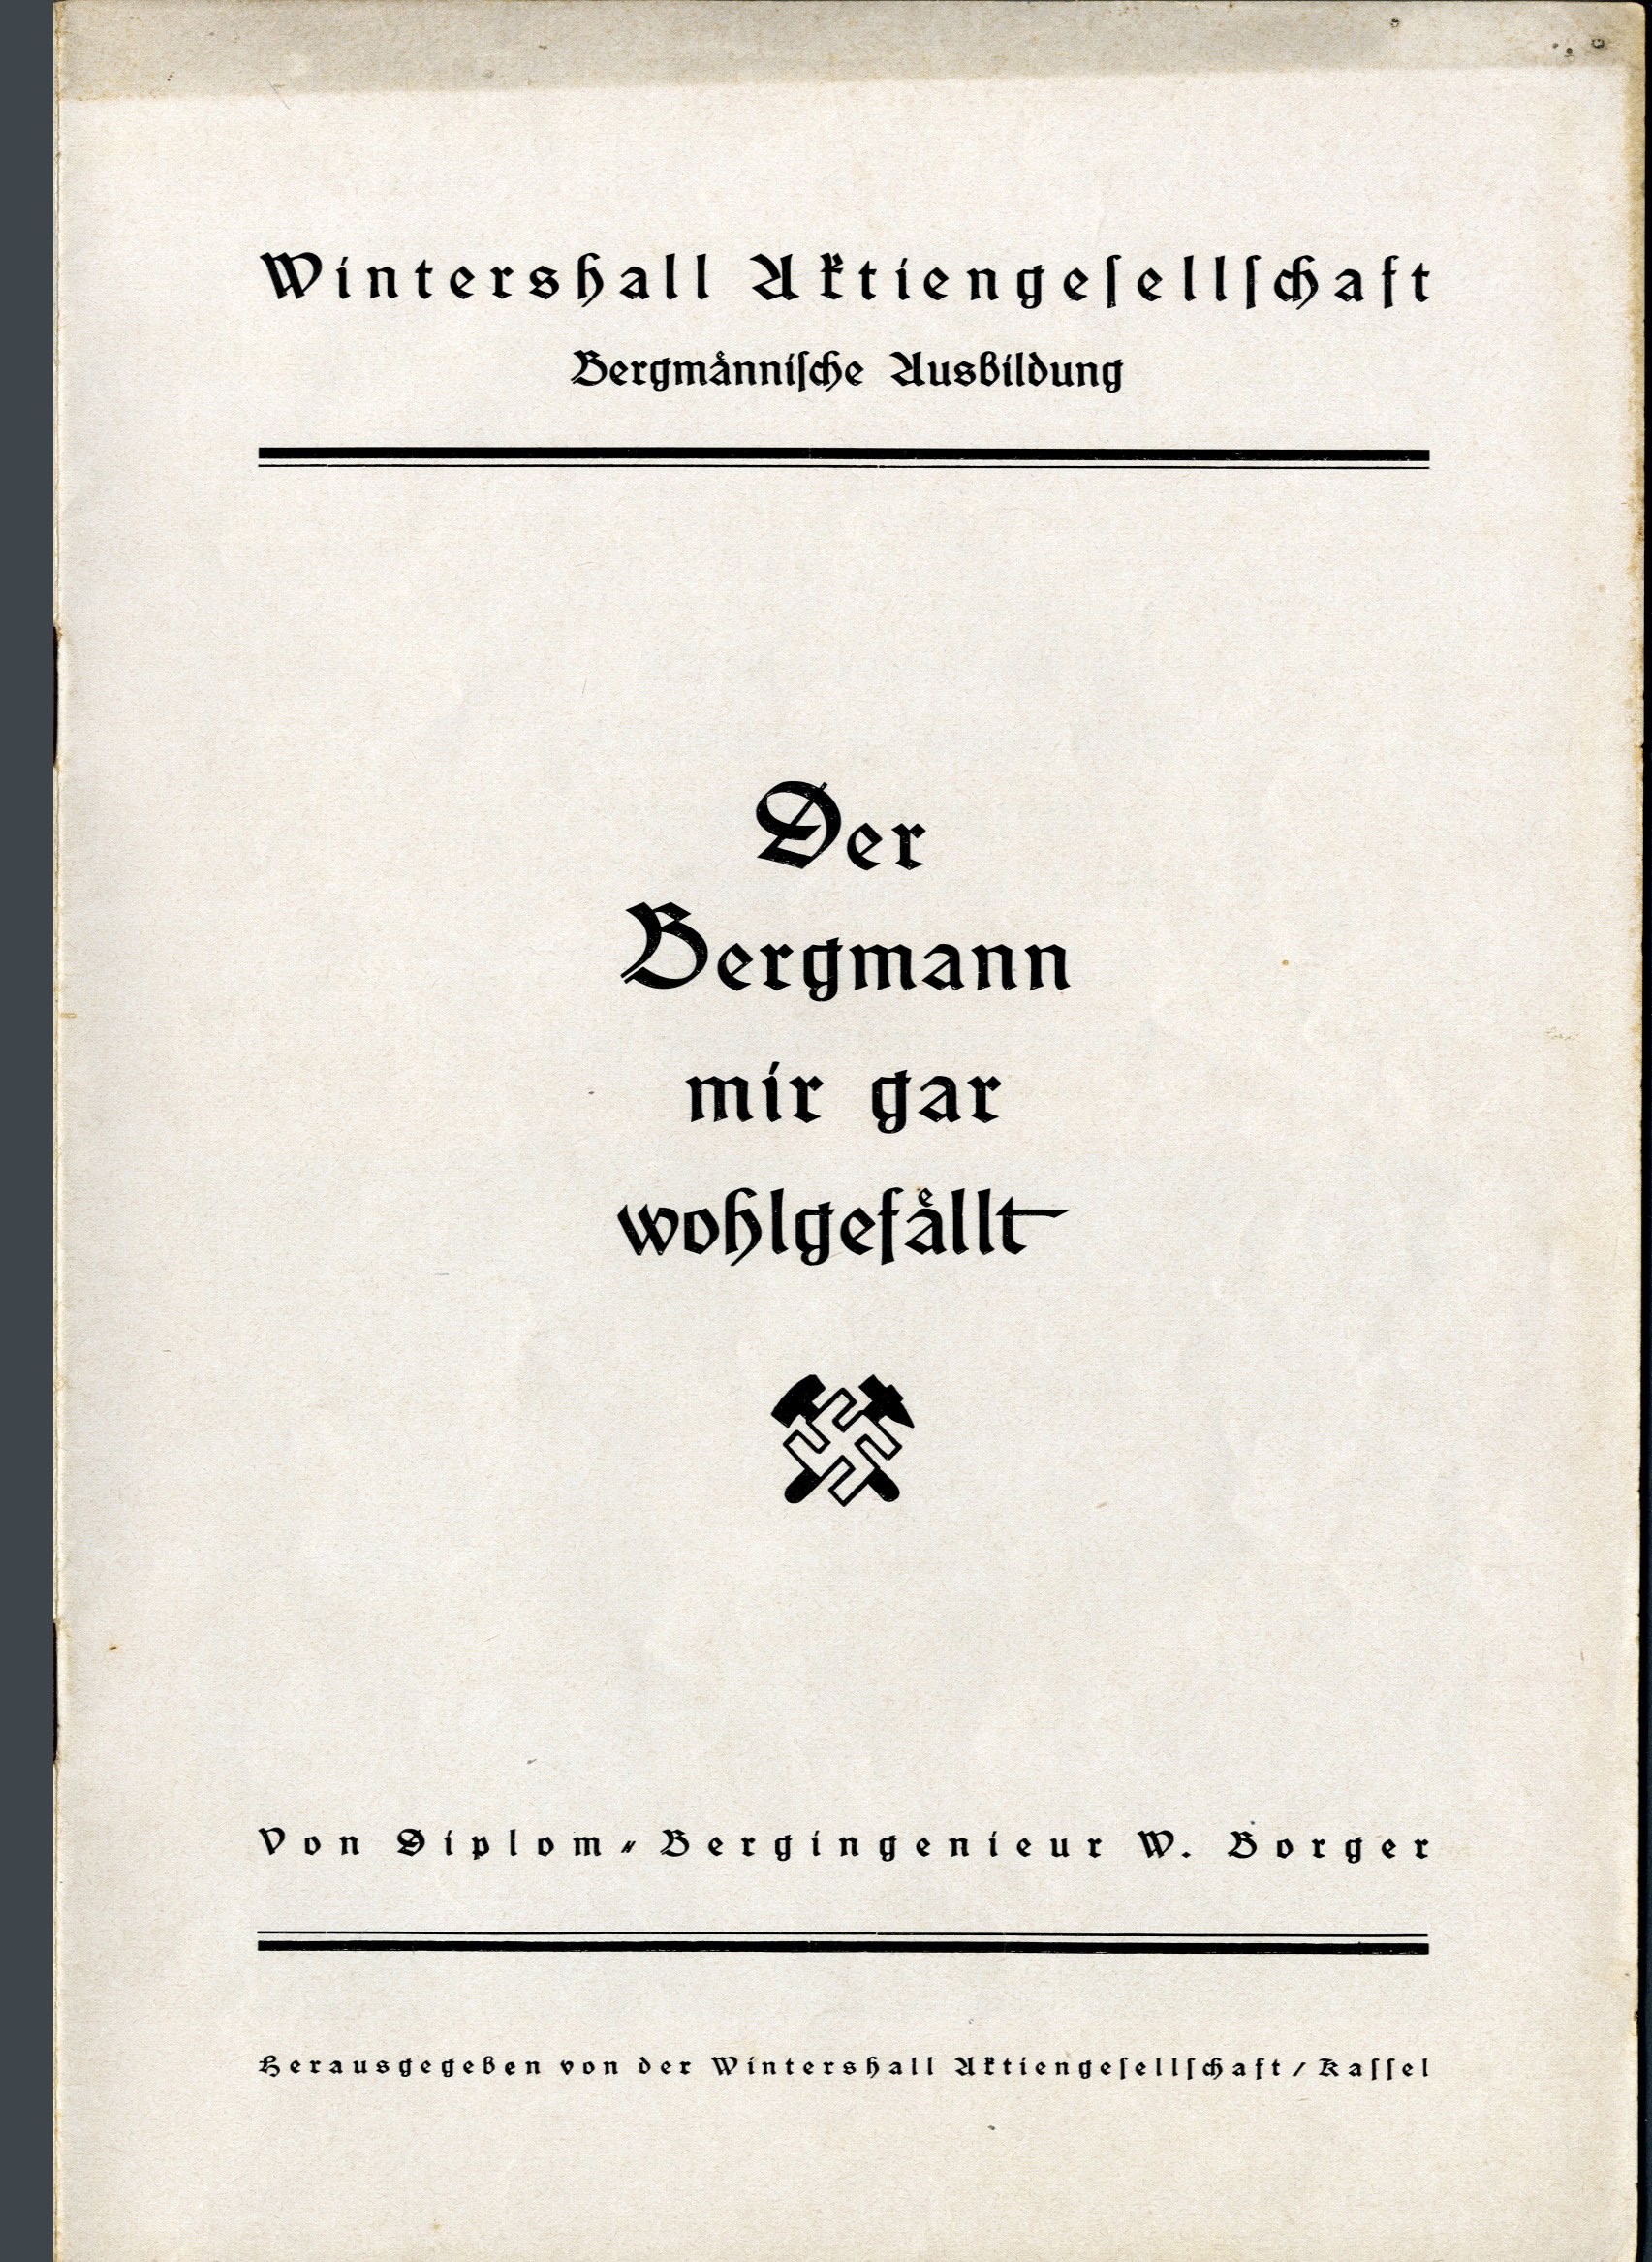 Werbebroschüre "Der Gergmann mir gar wohlgefällt" (Werra-Kalibergbau-Museum, Heringen/W. CC BY-NC-SA)